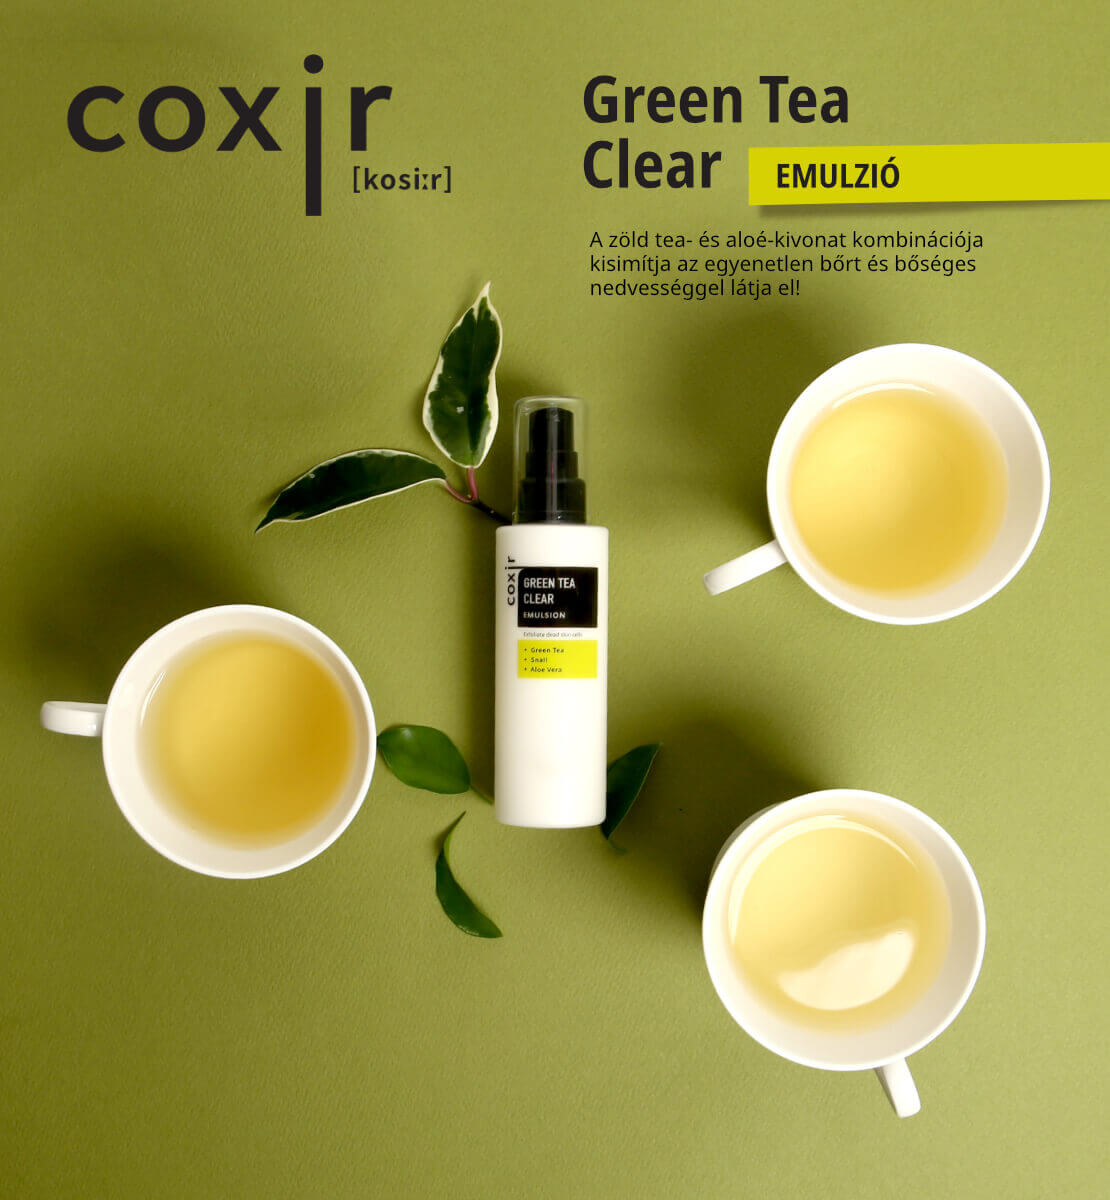 coxir-green-tea-clear-emulzio-leiras